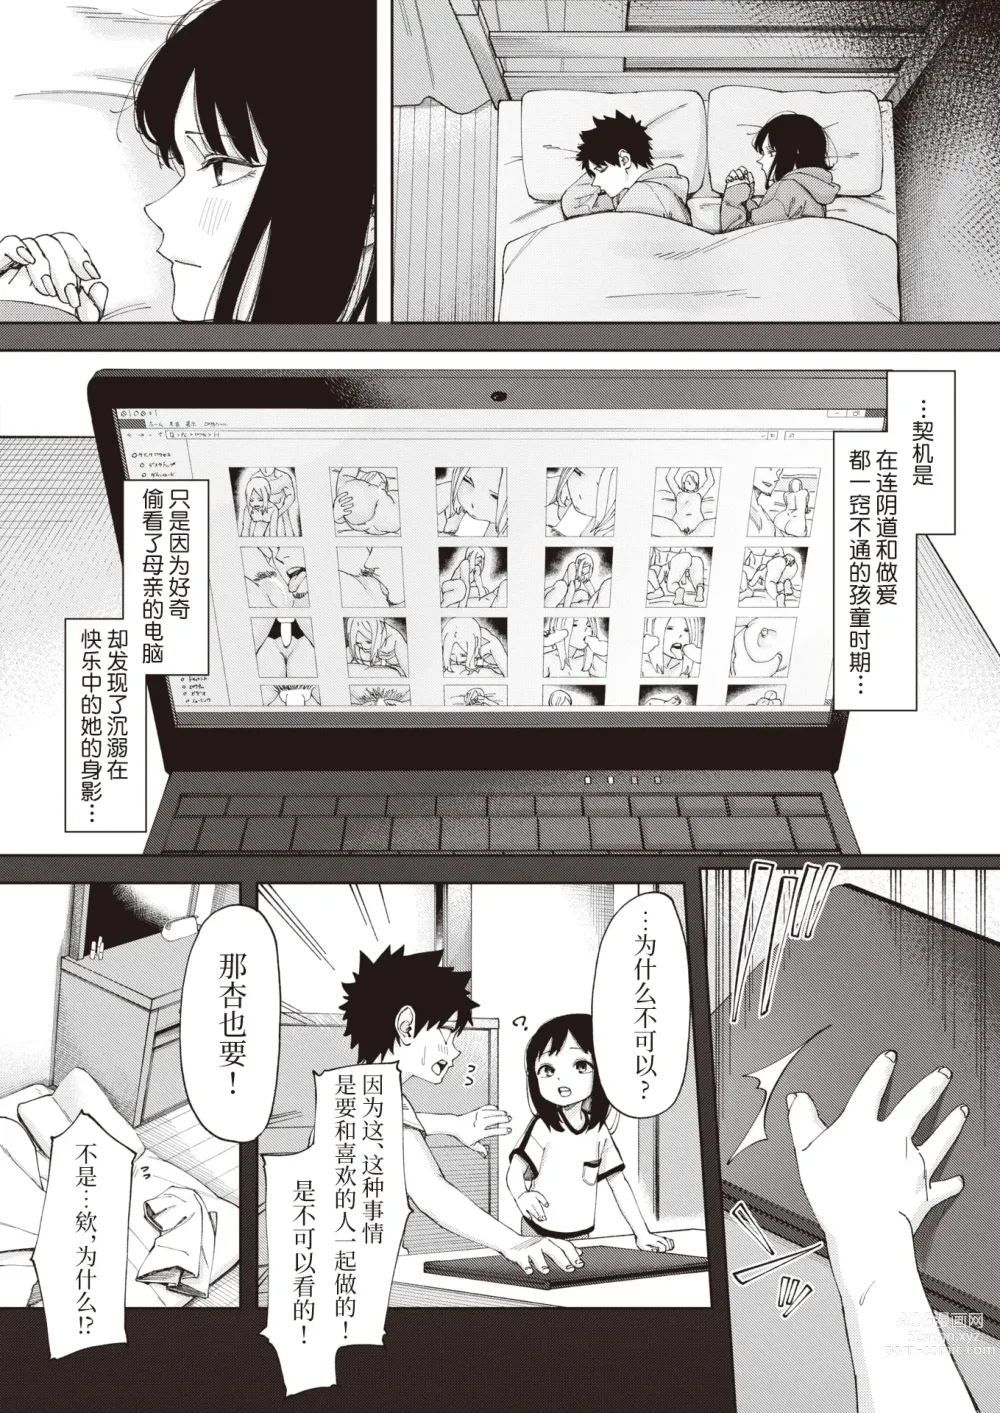 Page 6 of manga 鳥籠#1